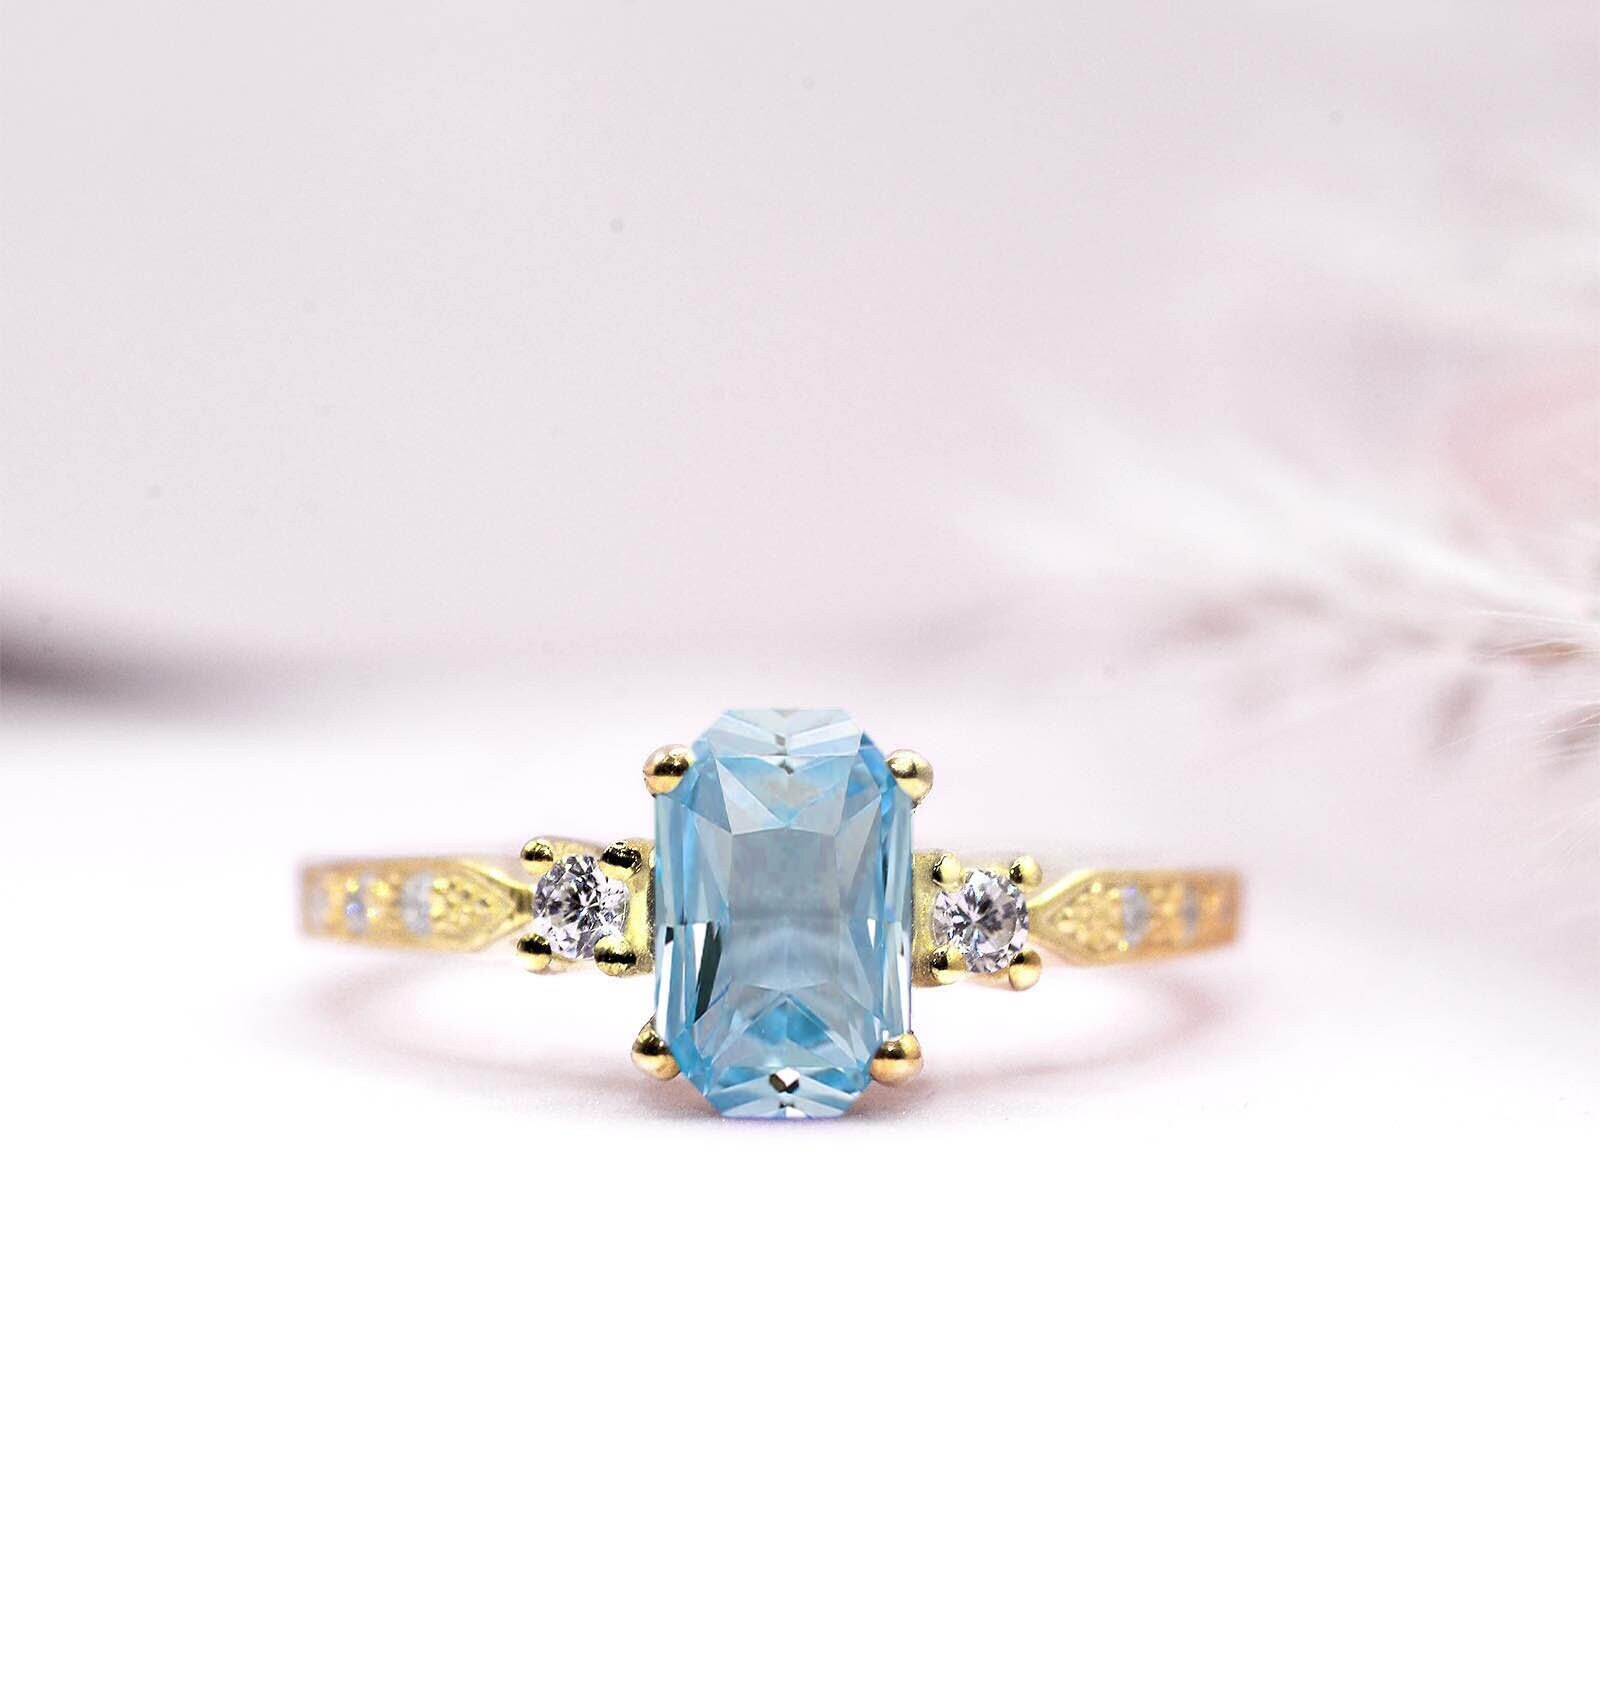 6 X 8mm Radiant Cut Aquamarin Art Deco Ring | Brautjubiläumsring in Gelbgold Verkauft Vintage Mit Diamanten von DiorahJewellery